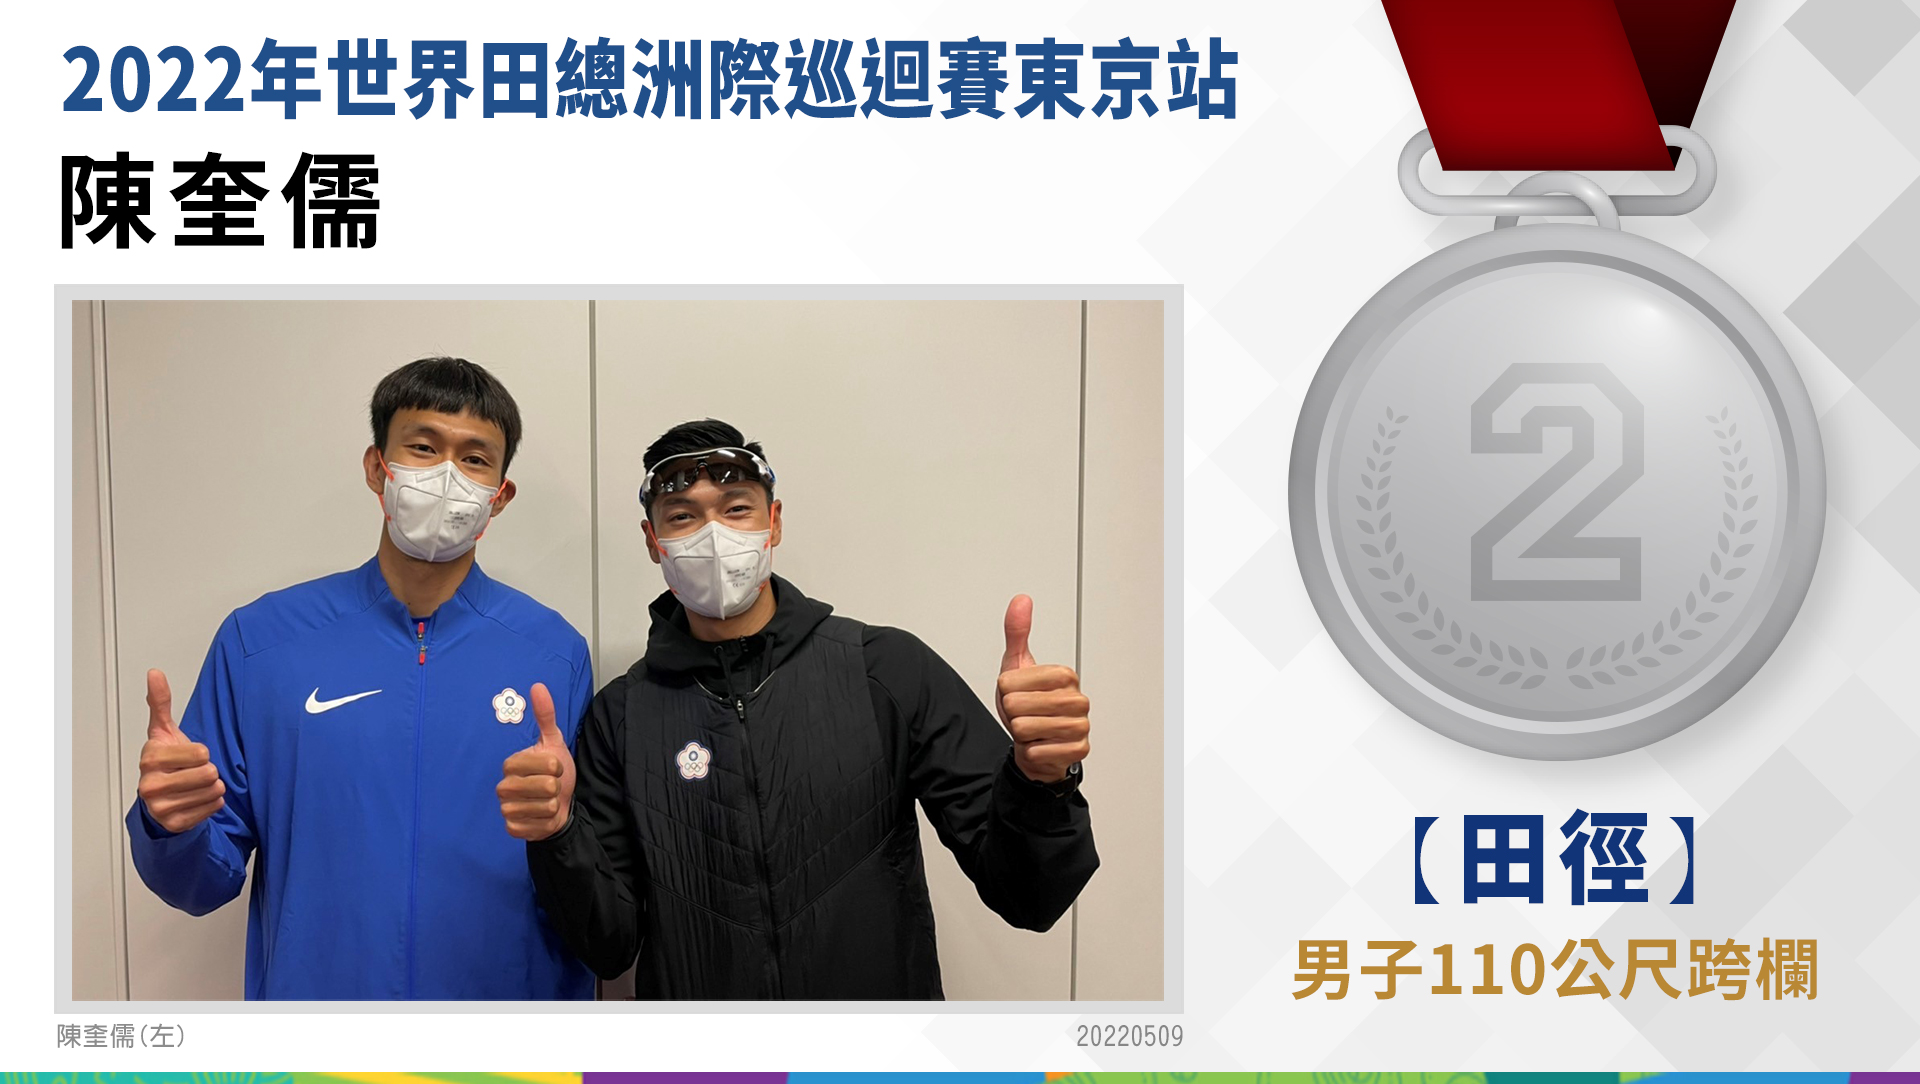 陳奎儒選手榮獲男子110公尺跨欄銀牌(左)